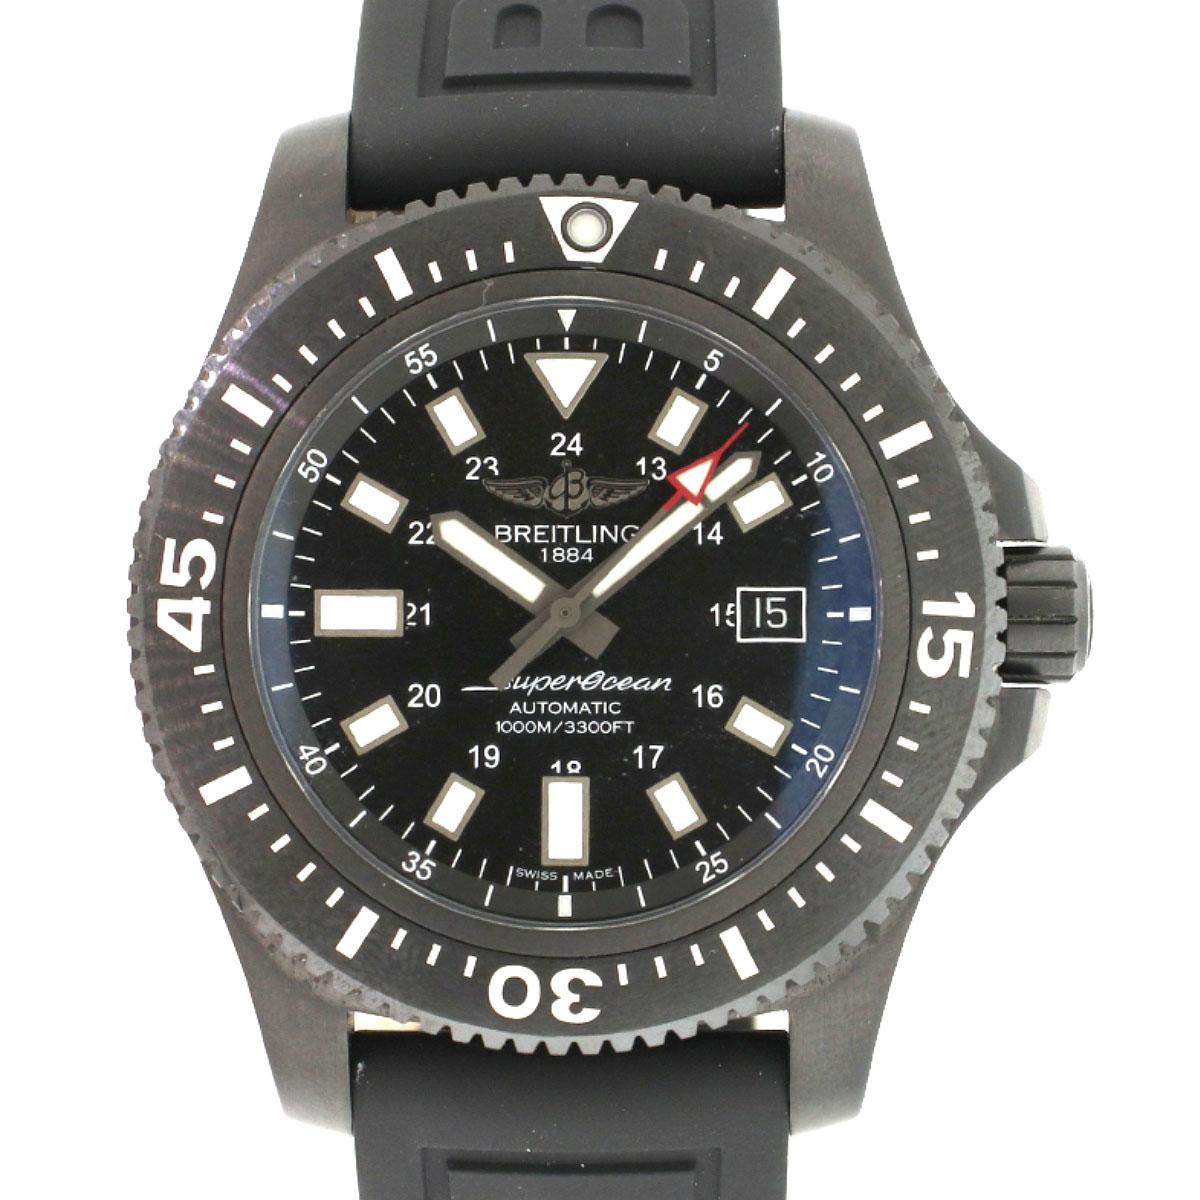 Élevez votre style avec la montre pour homme Breitling Superocean 44 Special Blacksteel. Fabriqué avec précision, ce garde-temps est doté d'un boîtier et d'un bracelet épurés en acier noir, dégageant une aura audacieuse et sophistiquée. Le cadran